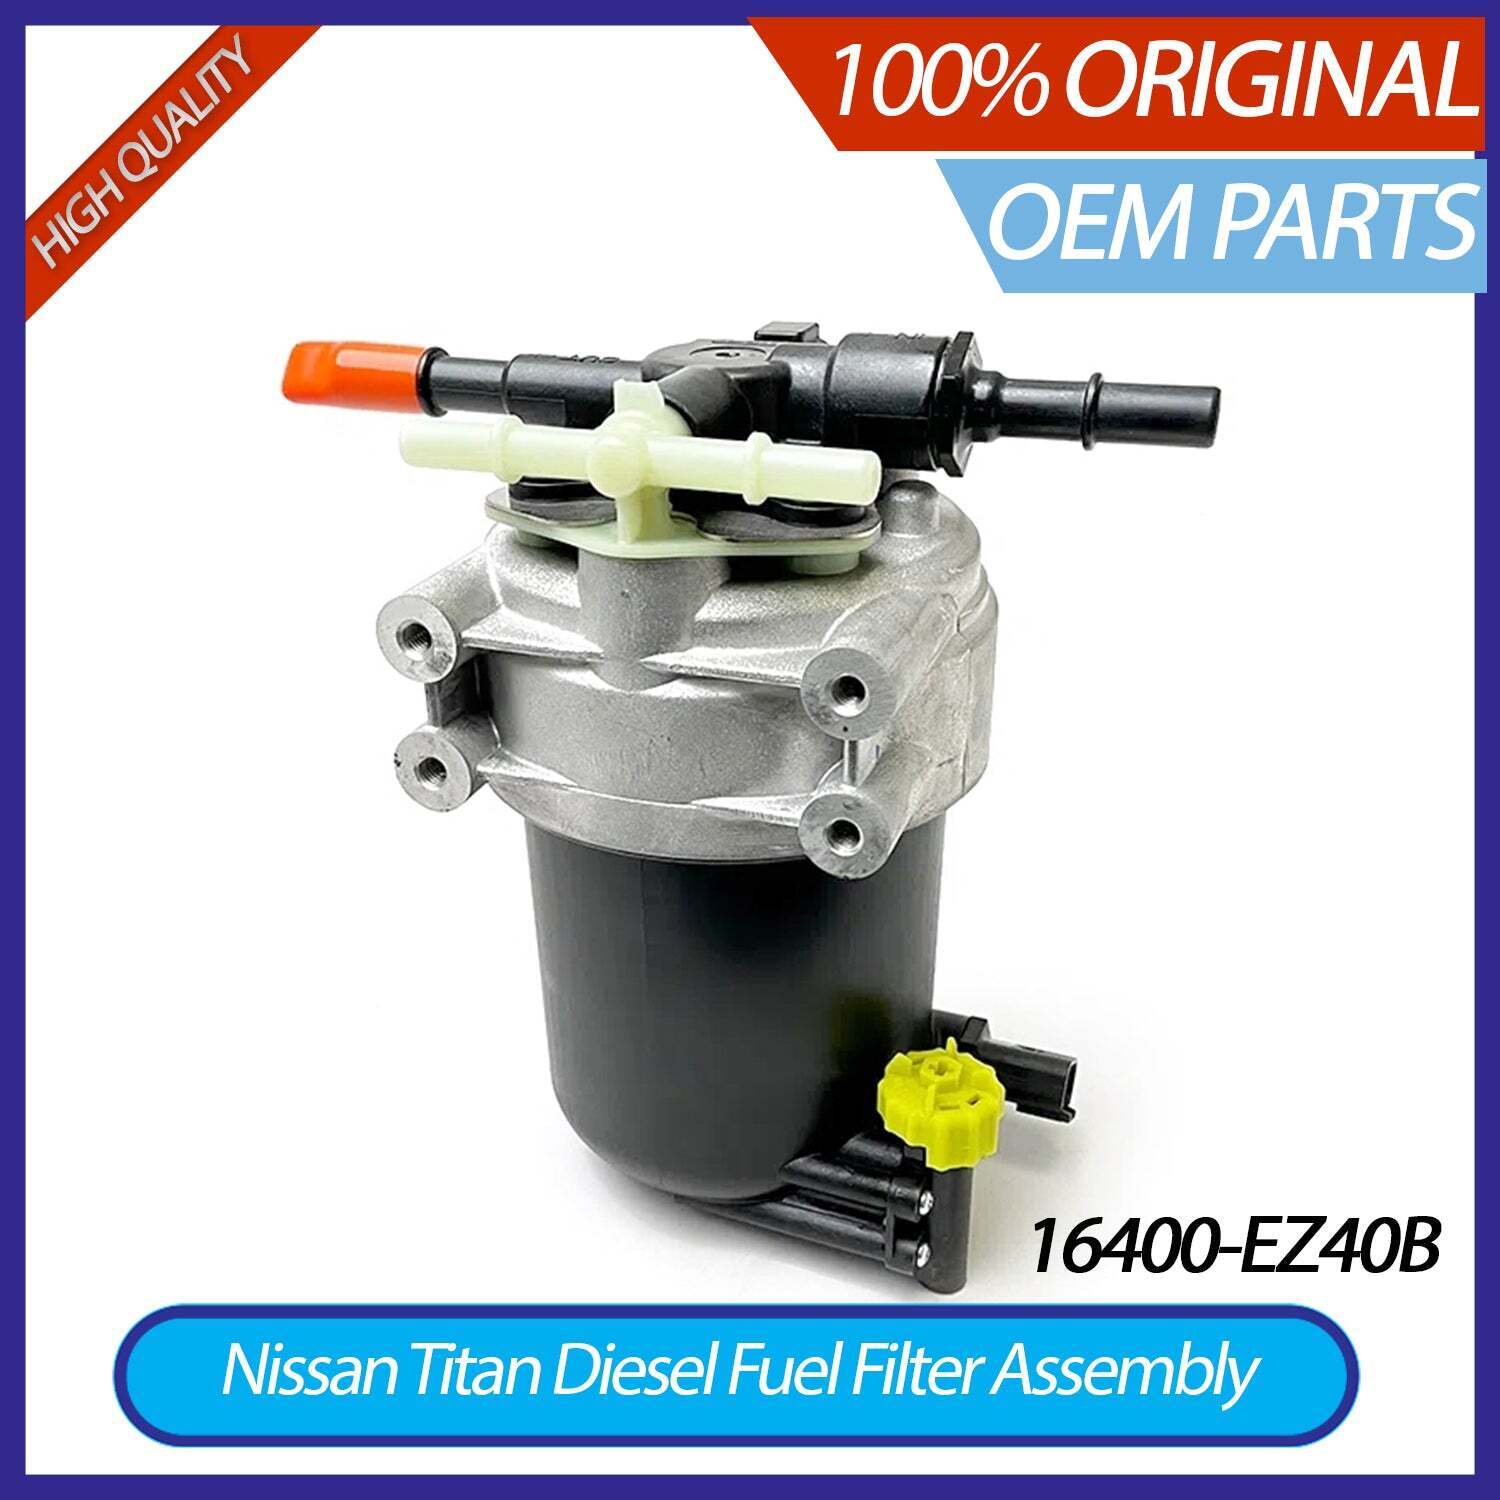 Genuine OEM Nissan Titan XD Diesel Fuel Filter Assembly On Frame -16400-EZ40B